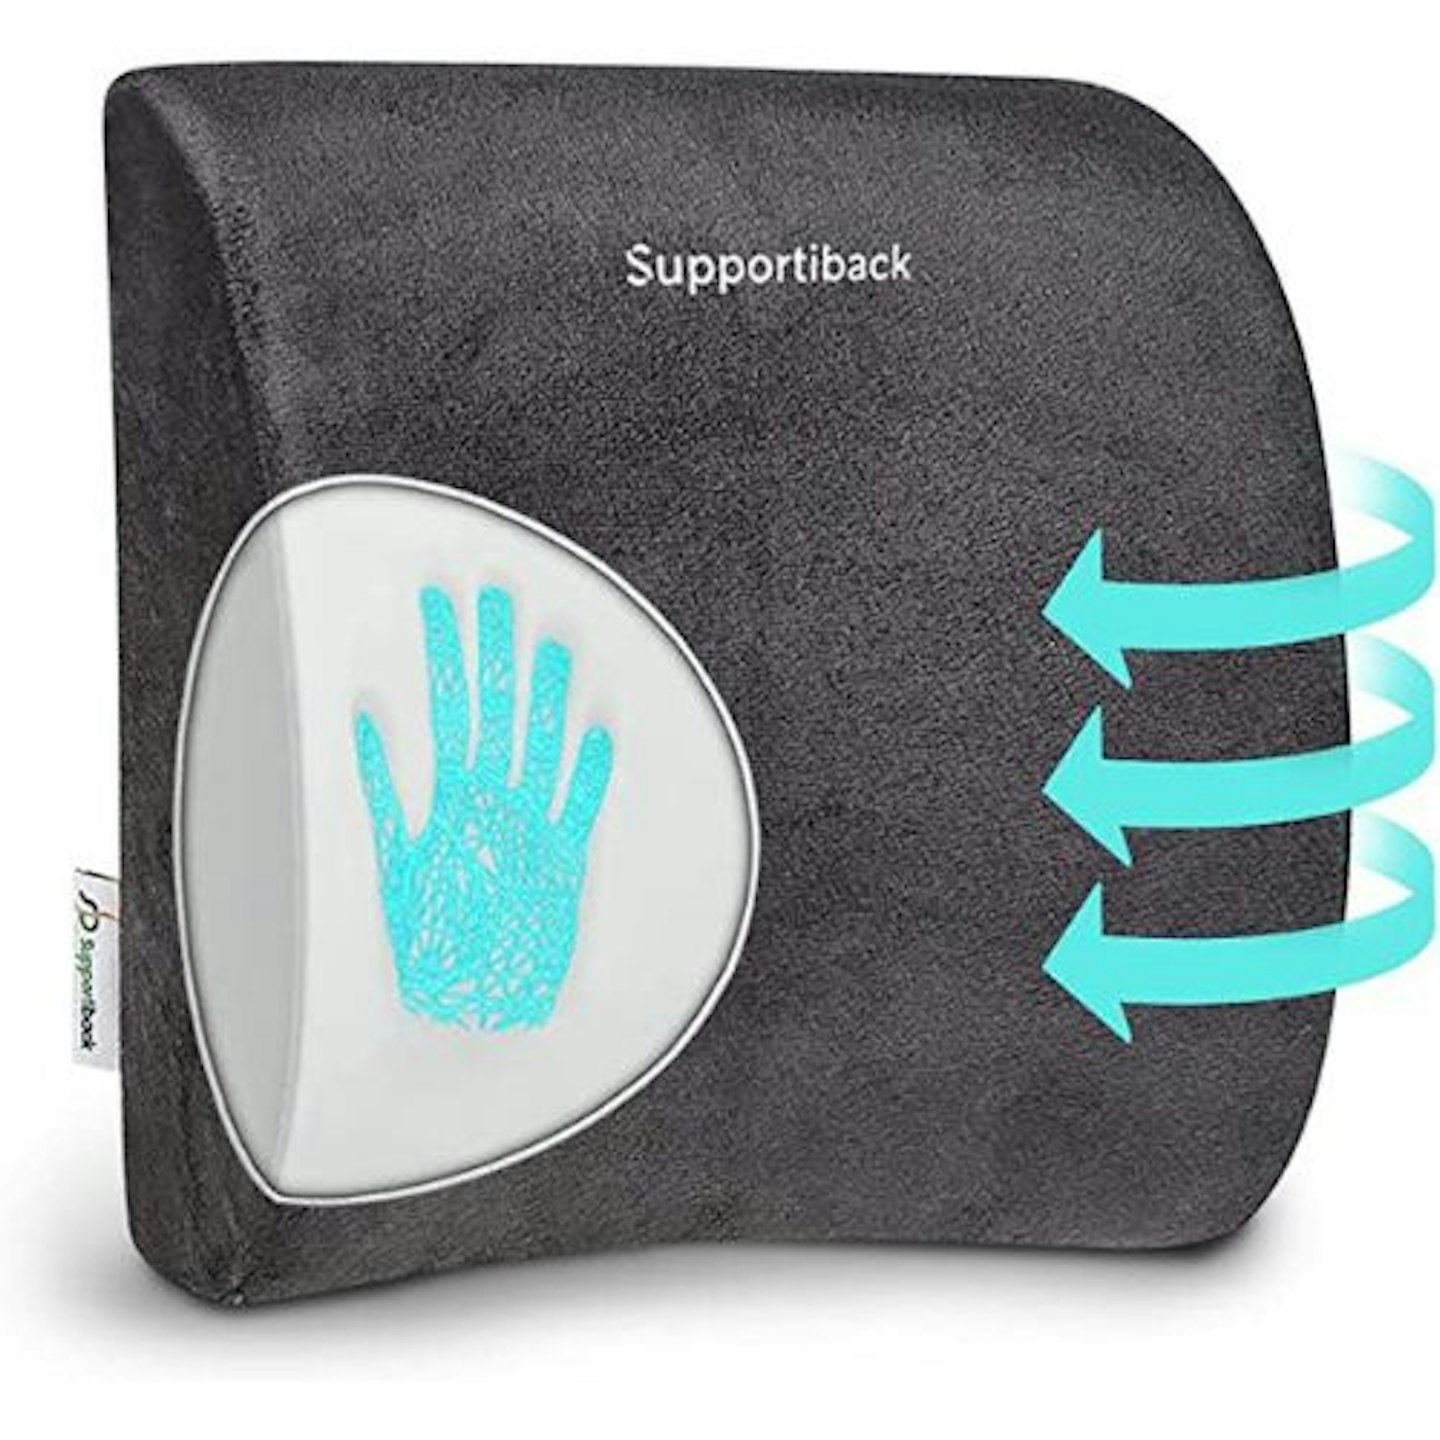 Supportiback Lumbar Support Pillow